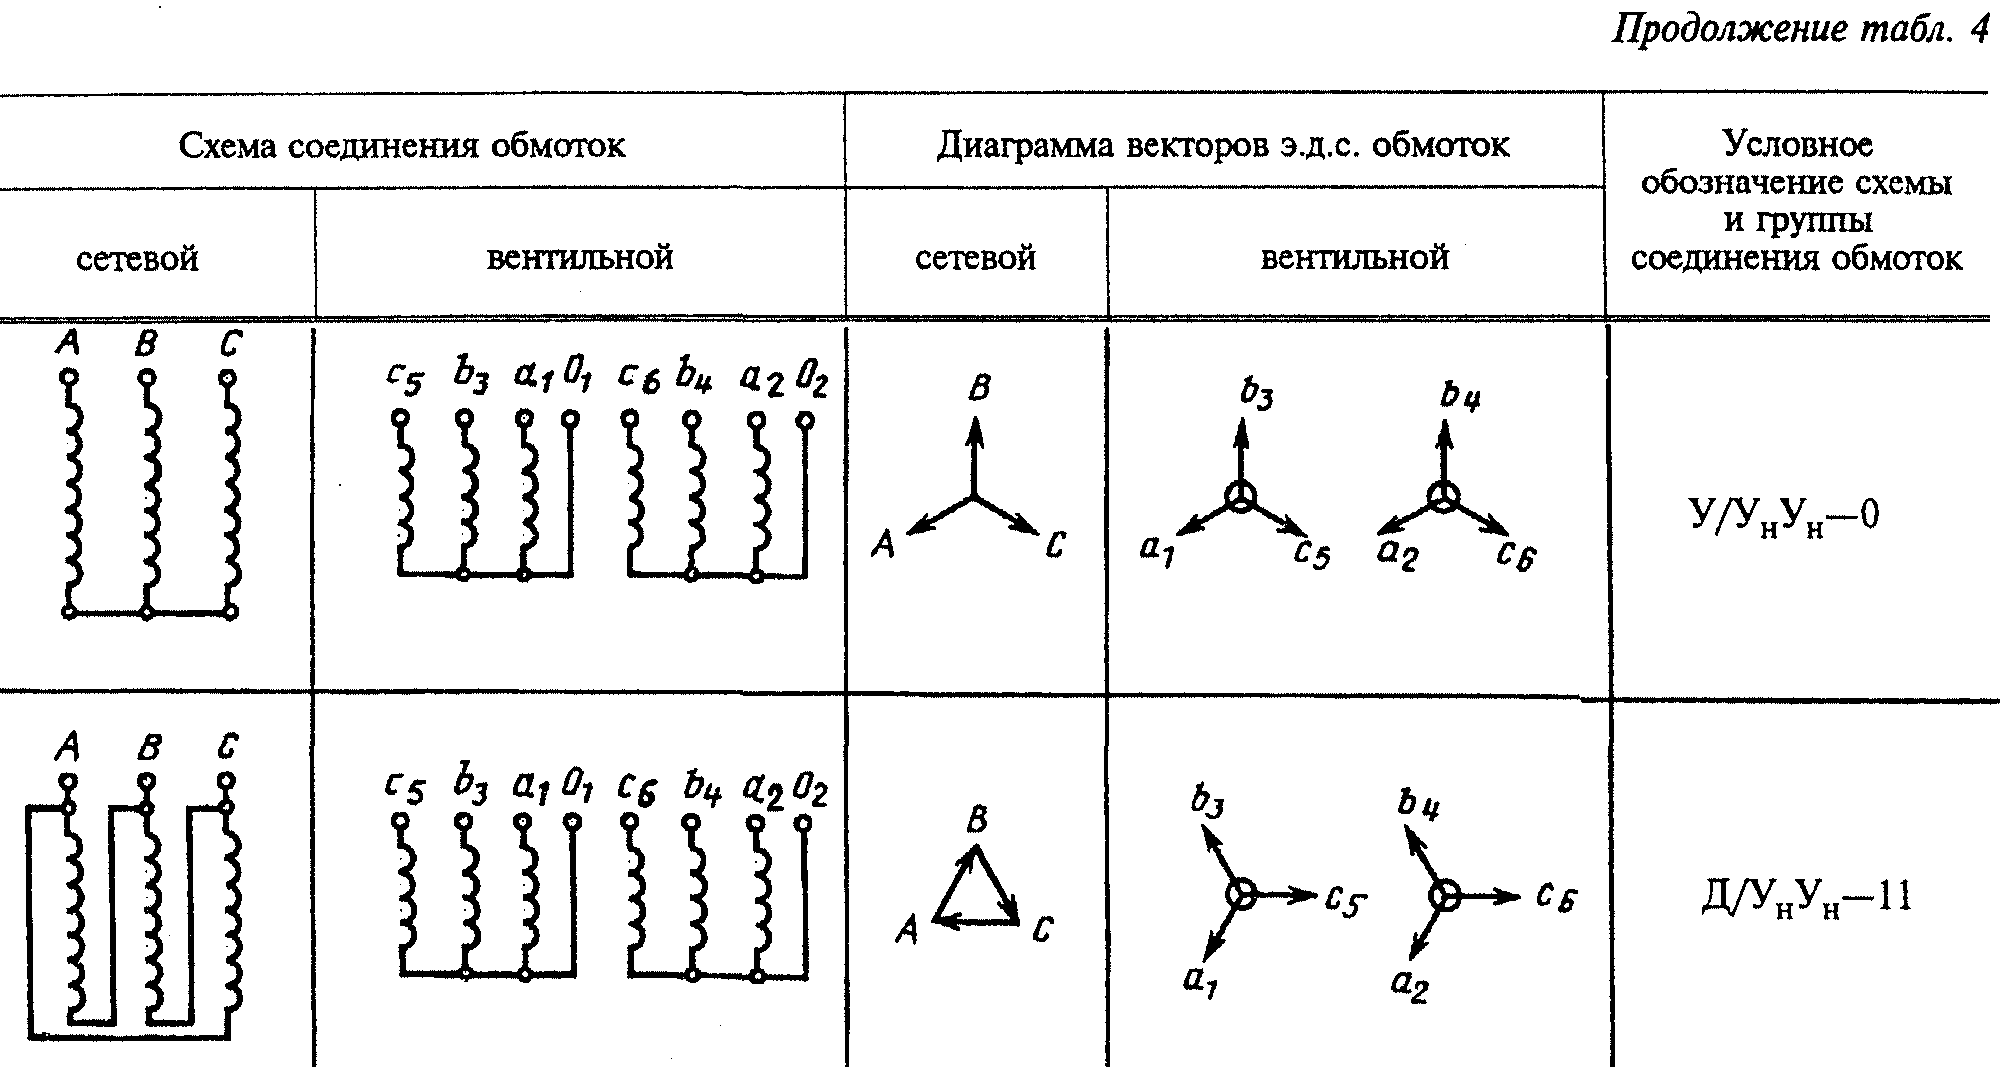 Группы соединения силовых. Схема соединения обмоток трансформатора 1/1-0. 1/1-0 Группа соединения. Обозначения схемы соединения обмоток. Схема соединения обмоток трансформатора у/Zн-11.